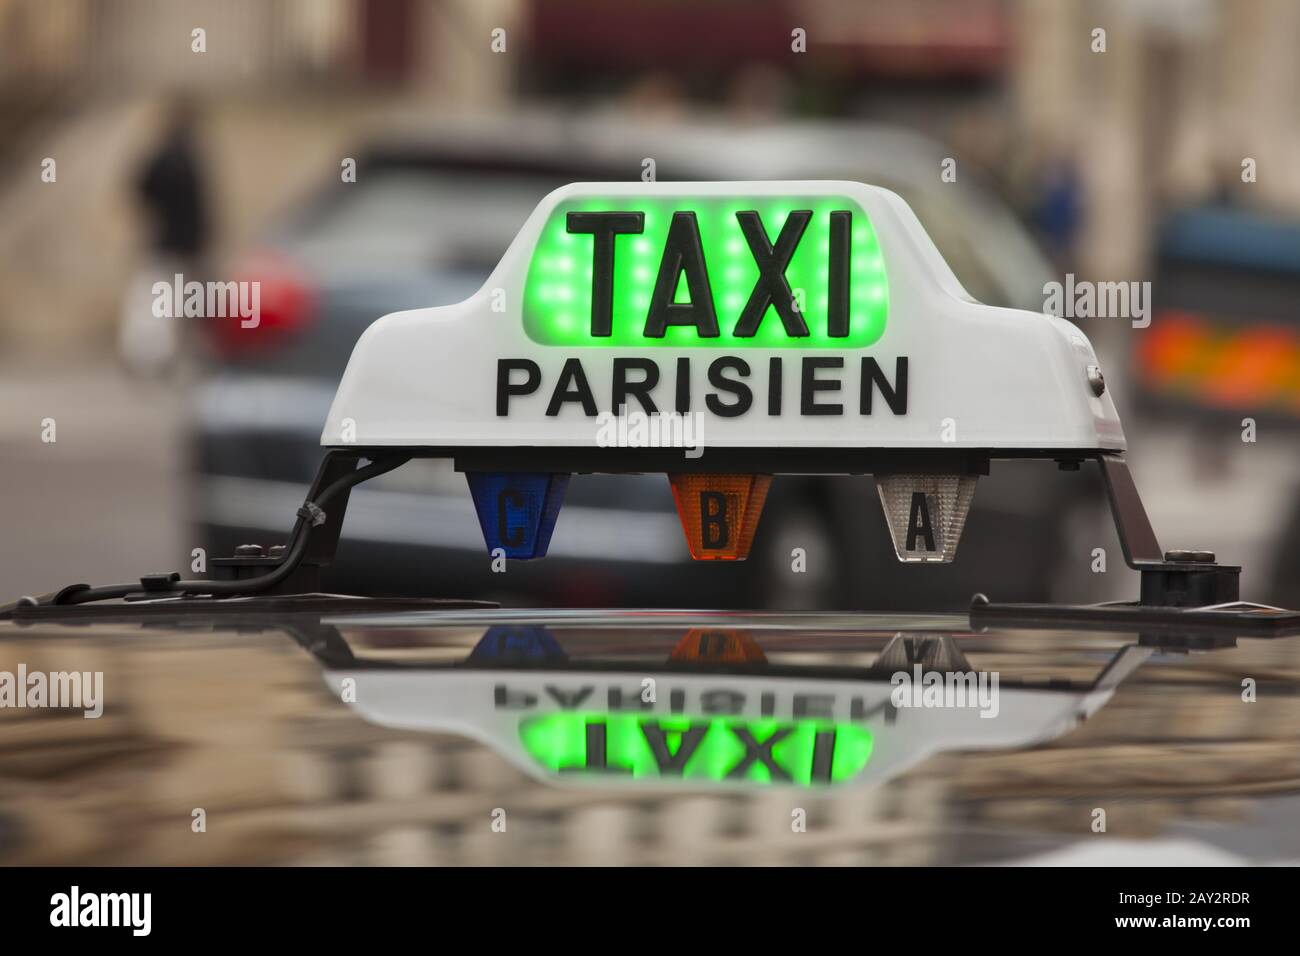 Panneau de taxi parisien Banque D'Images